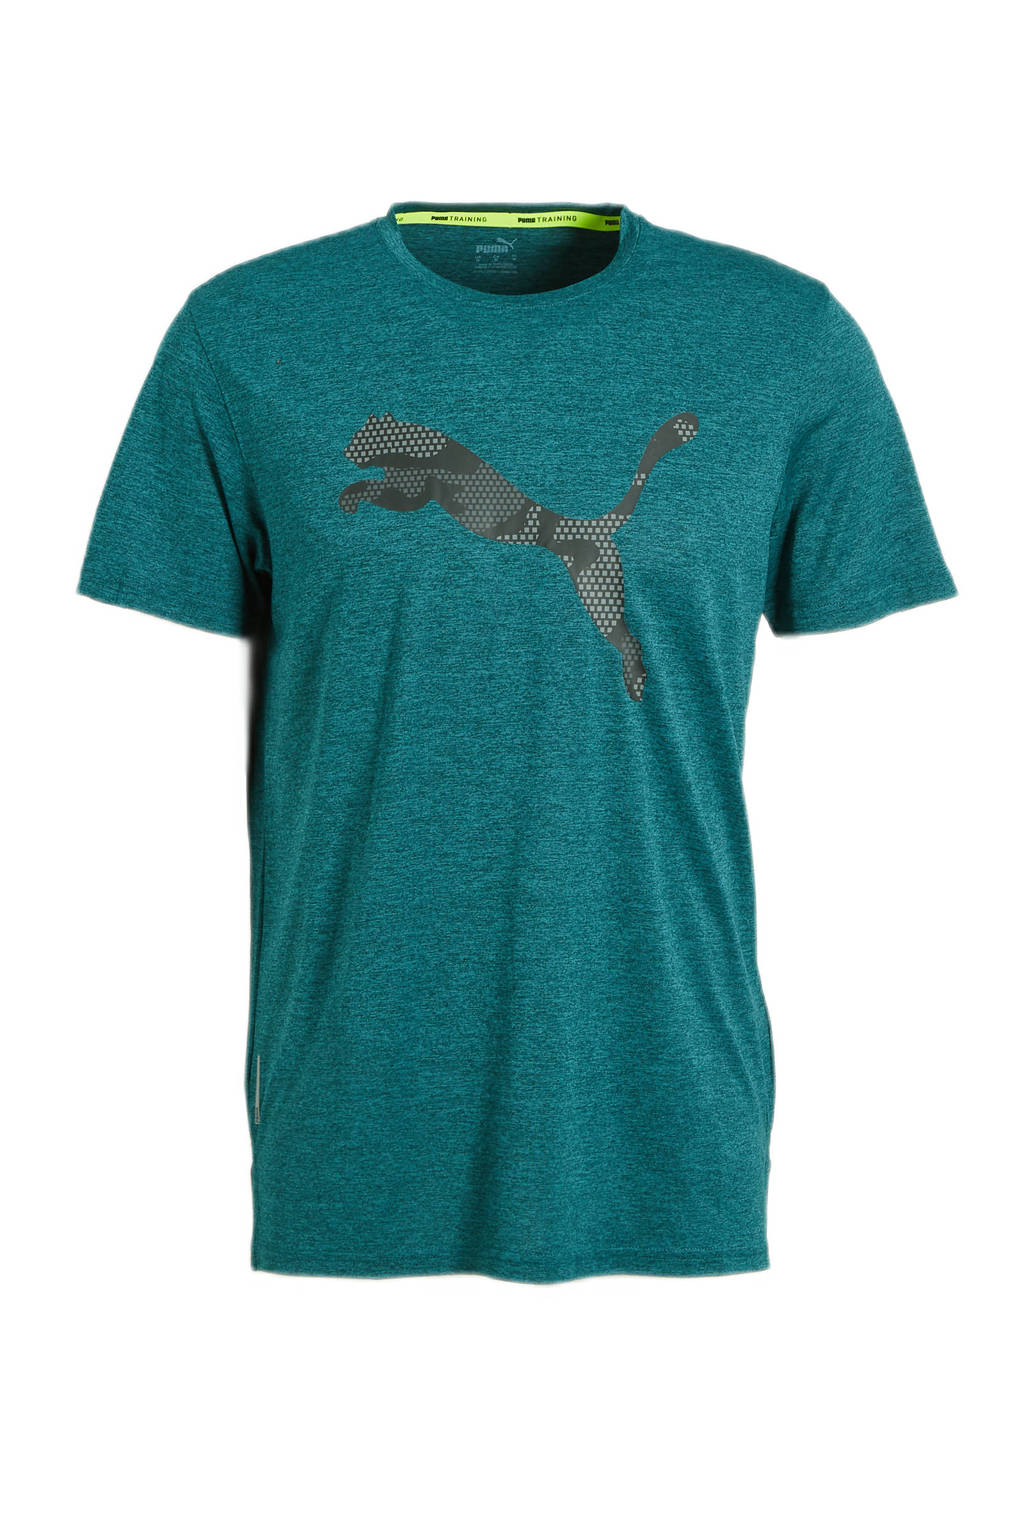 Puma   sport T-shirt donkergroen